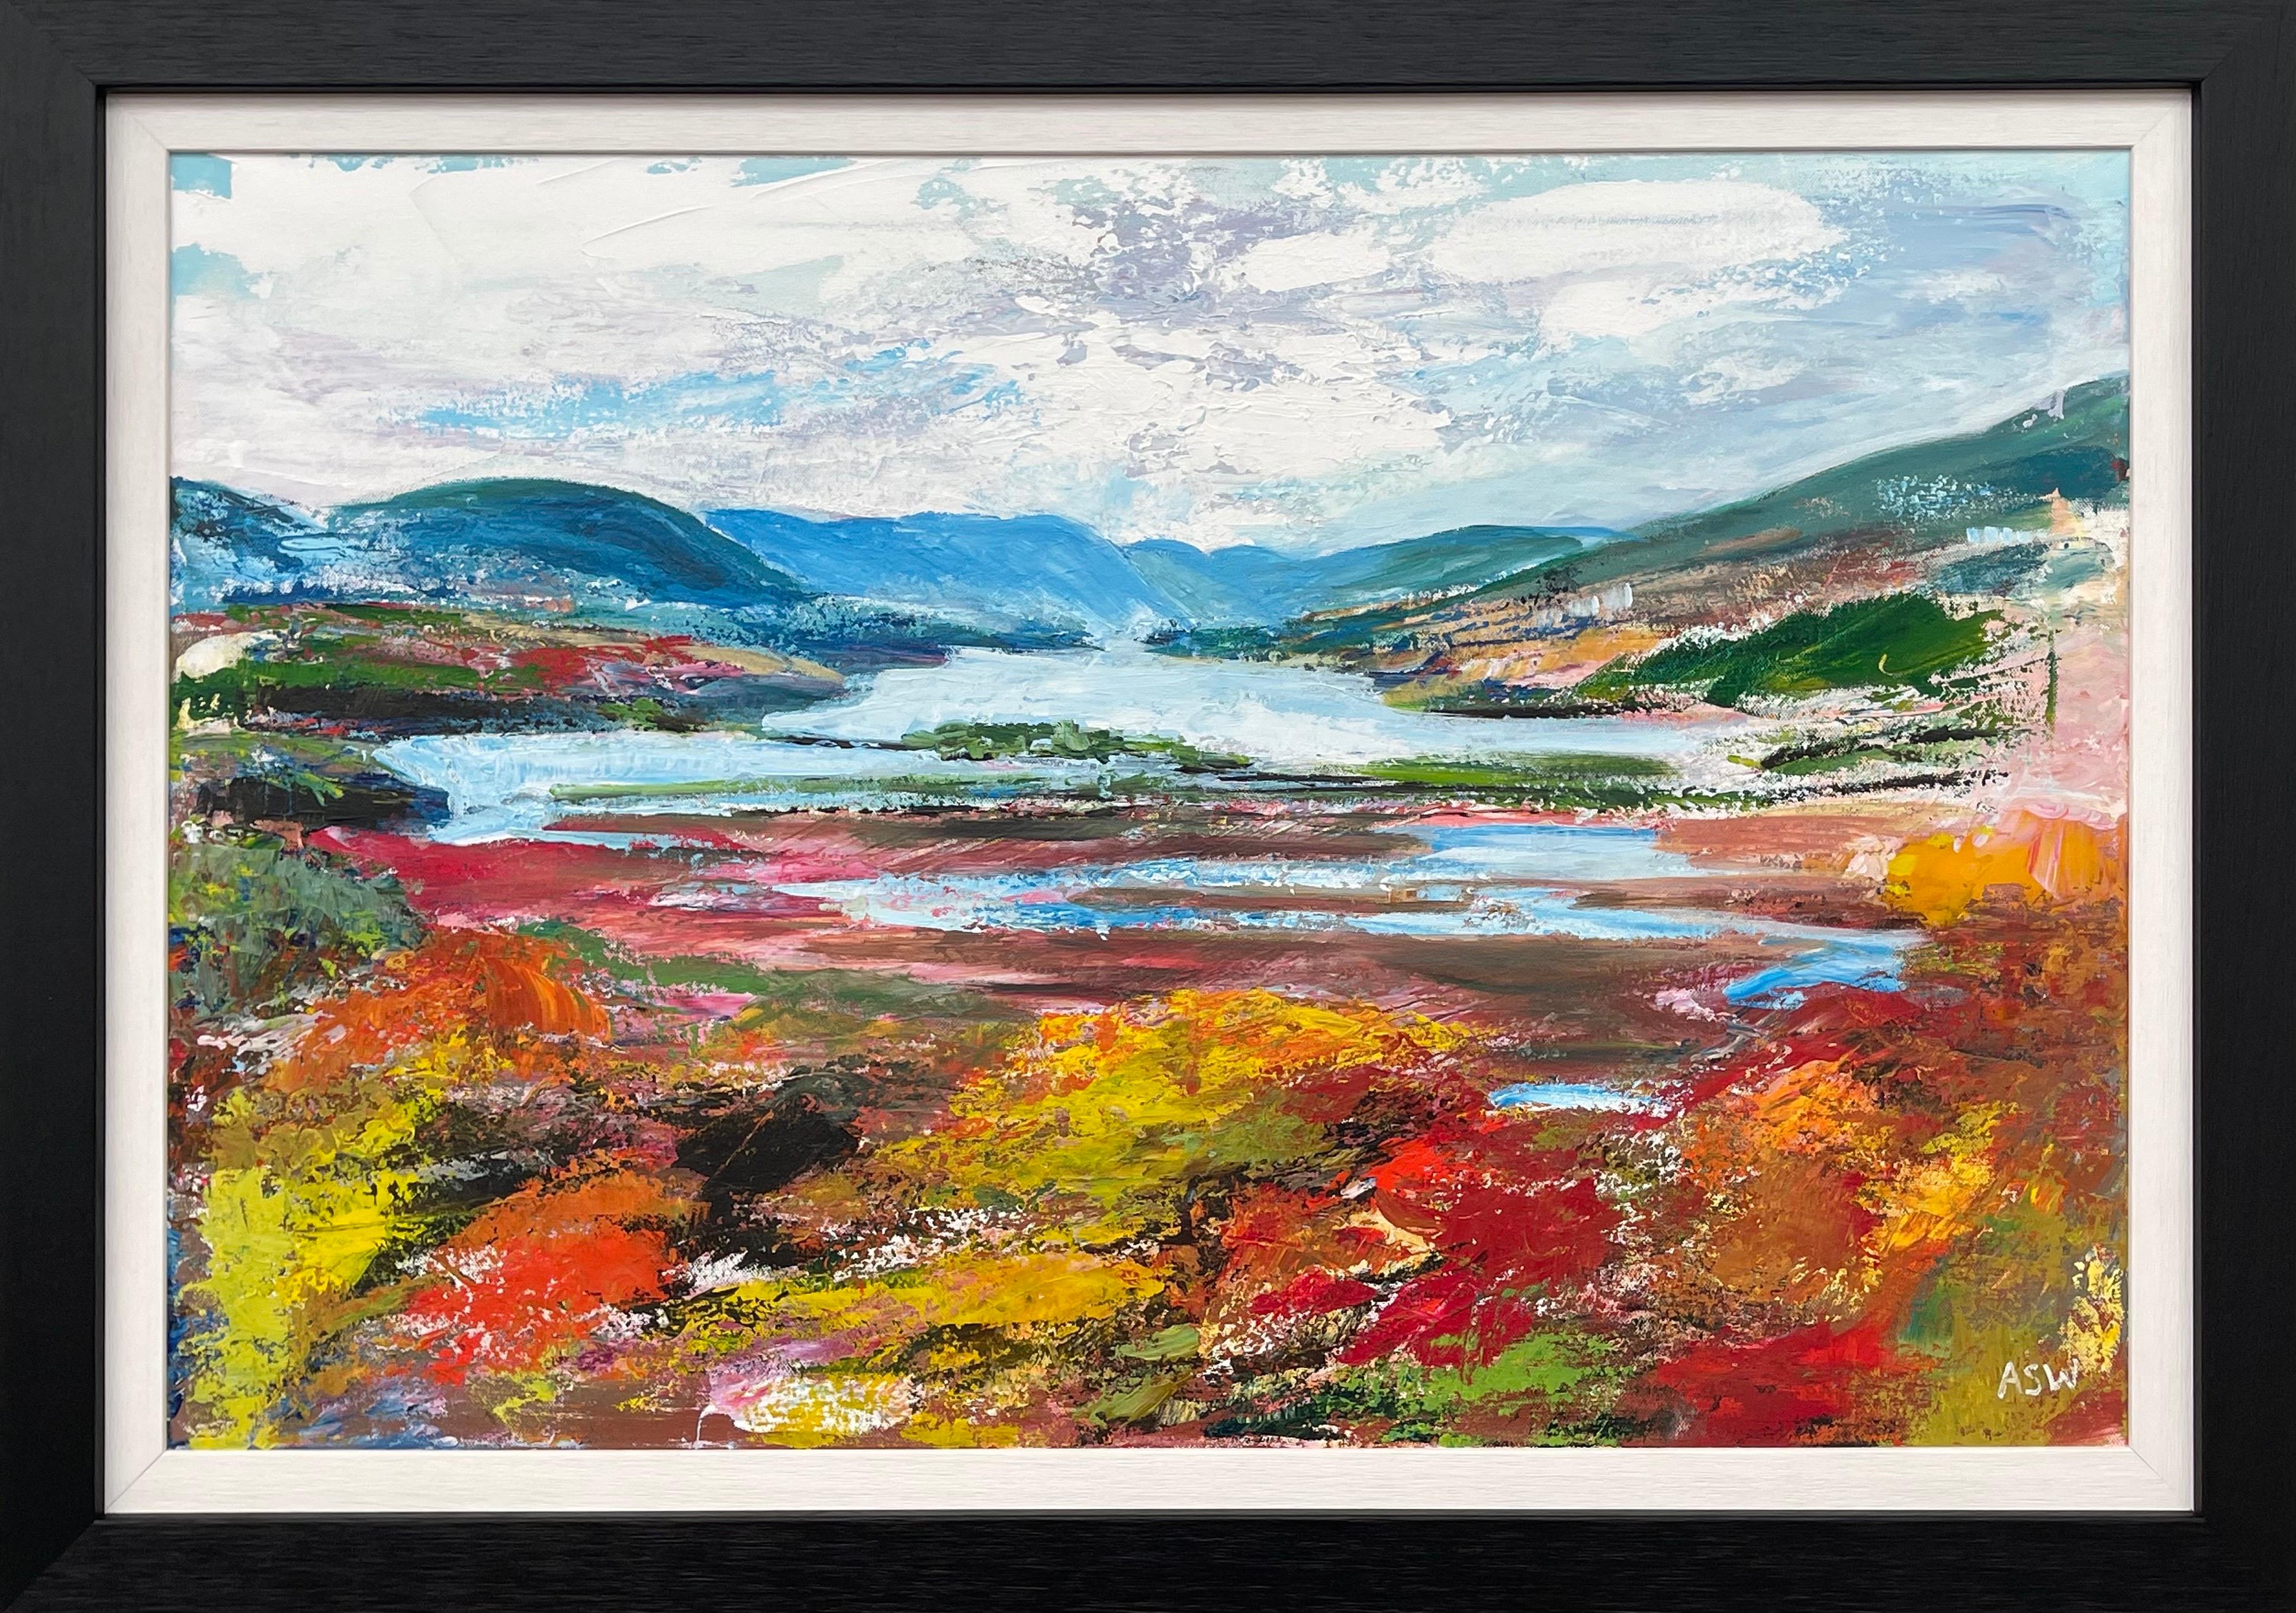 Peinture de paysage abstrait coloré de la rivière Hudson réalisée par un artiste contemporain